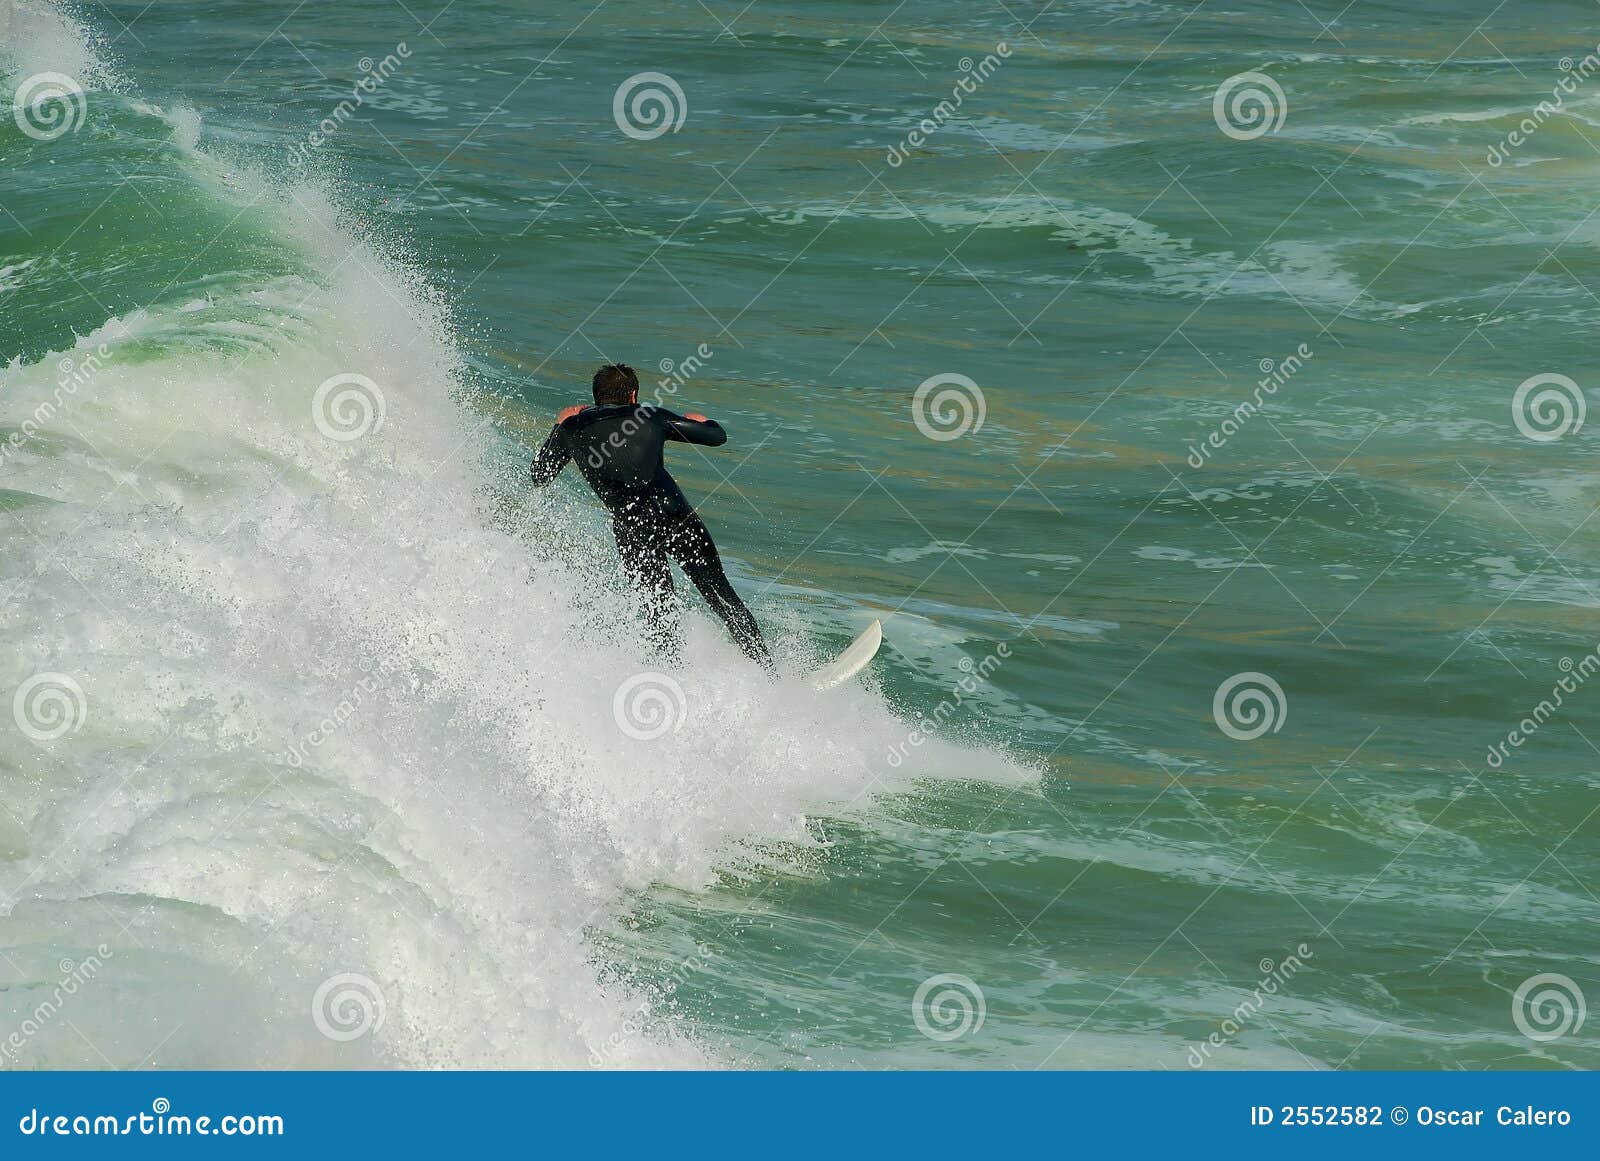 surfing in euskadi